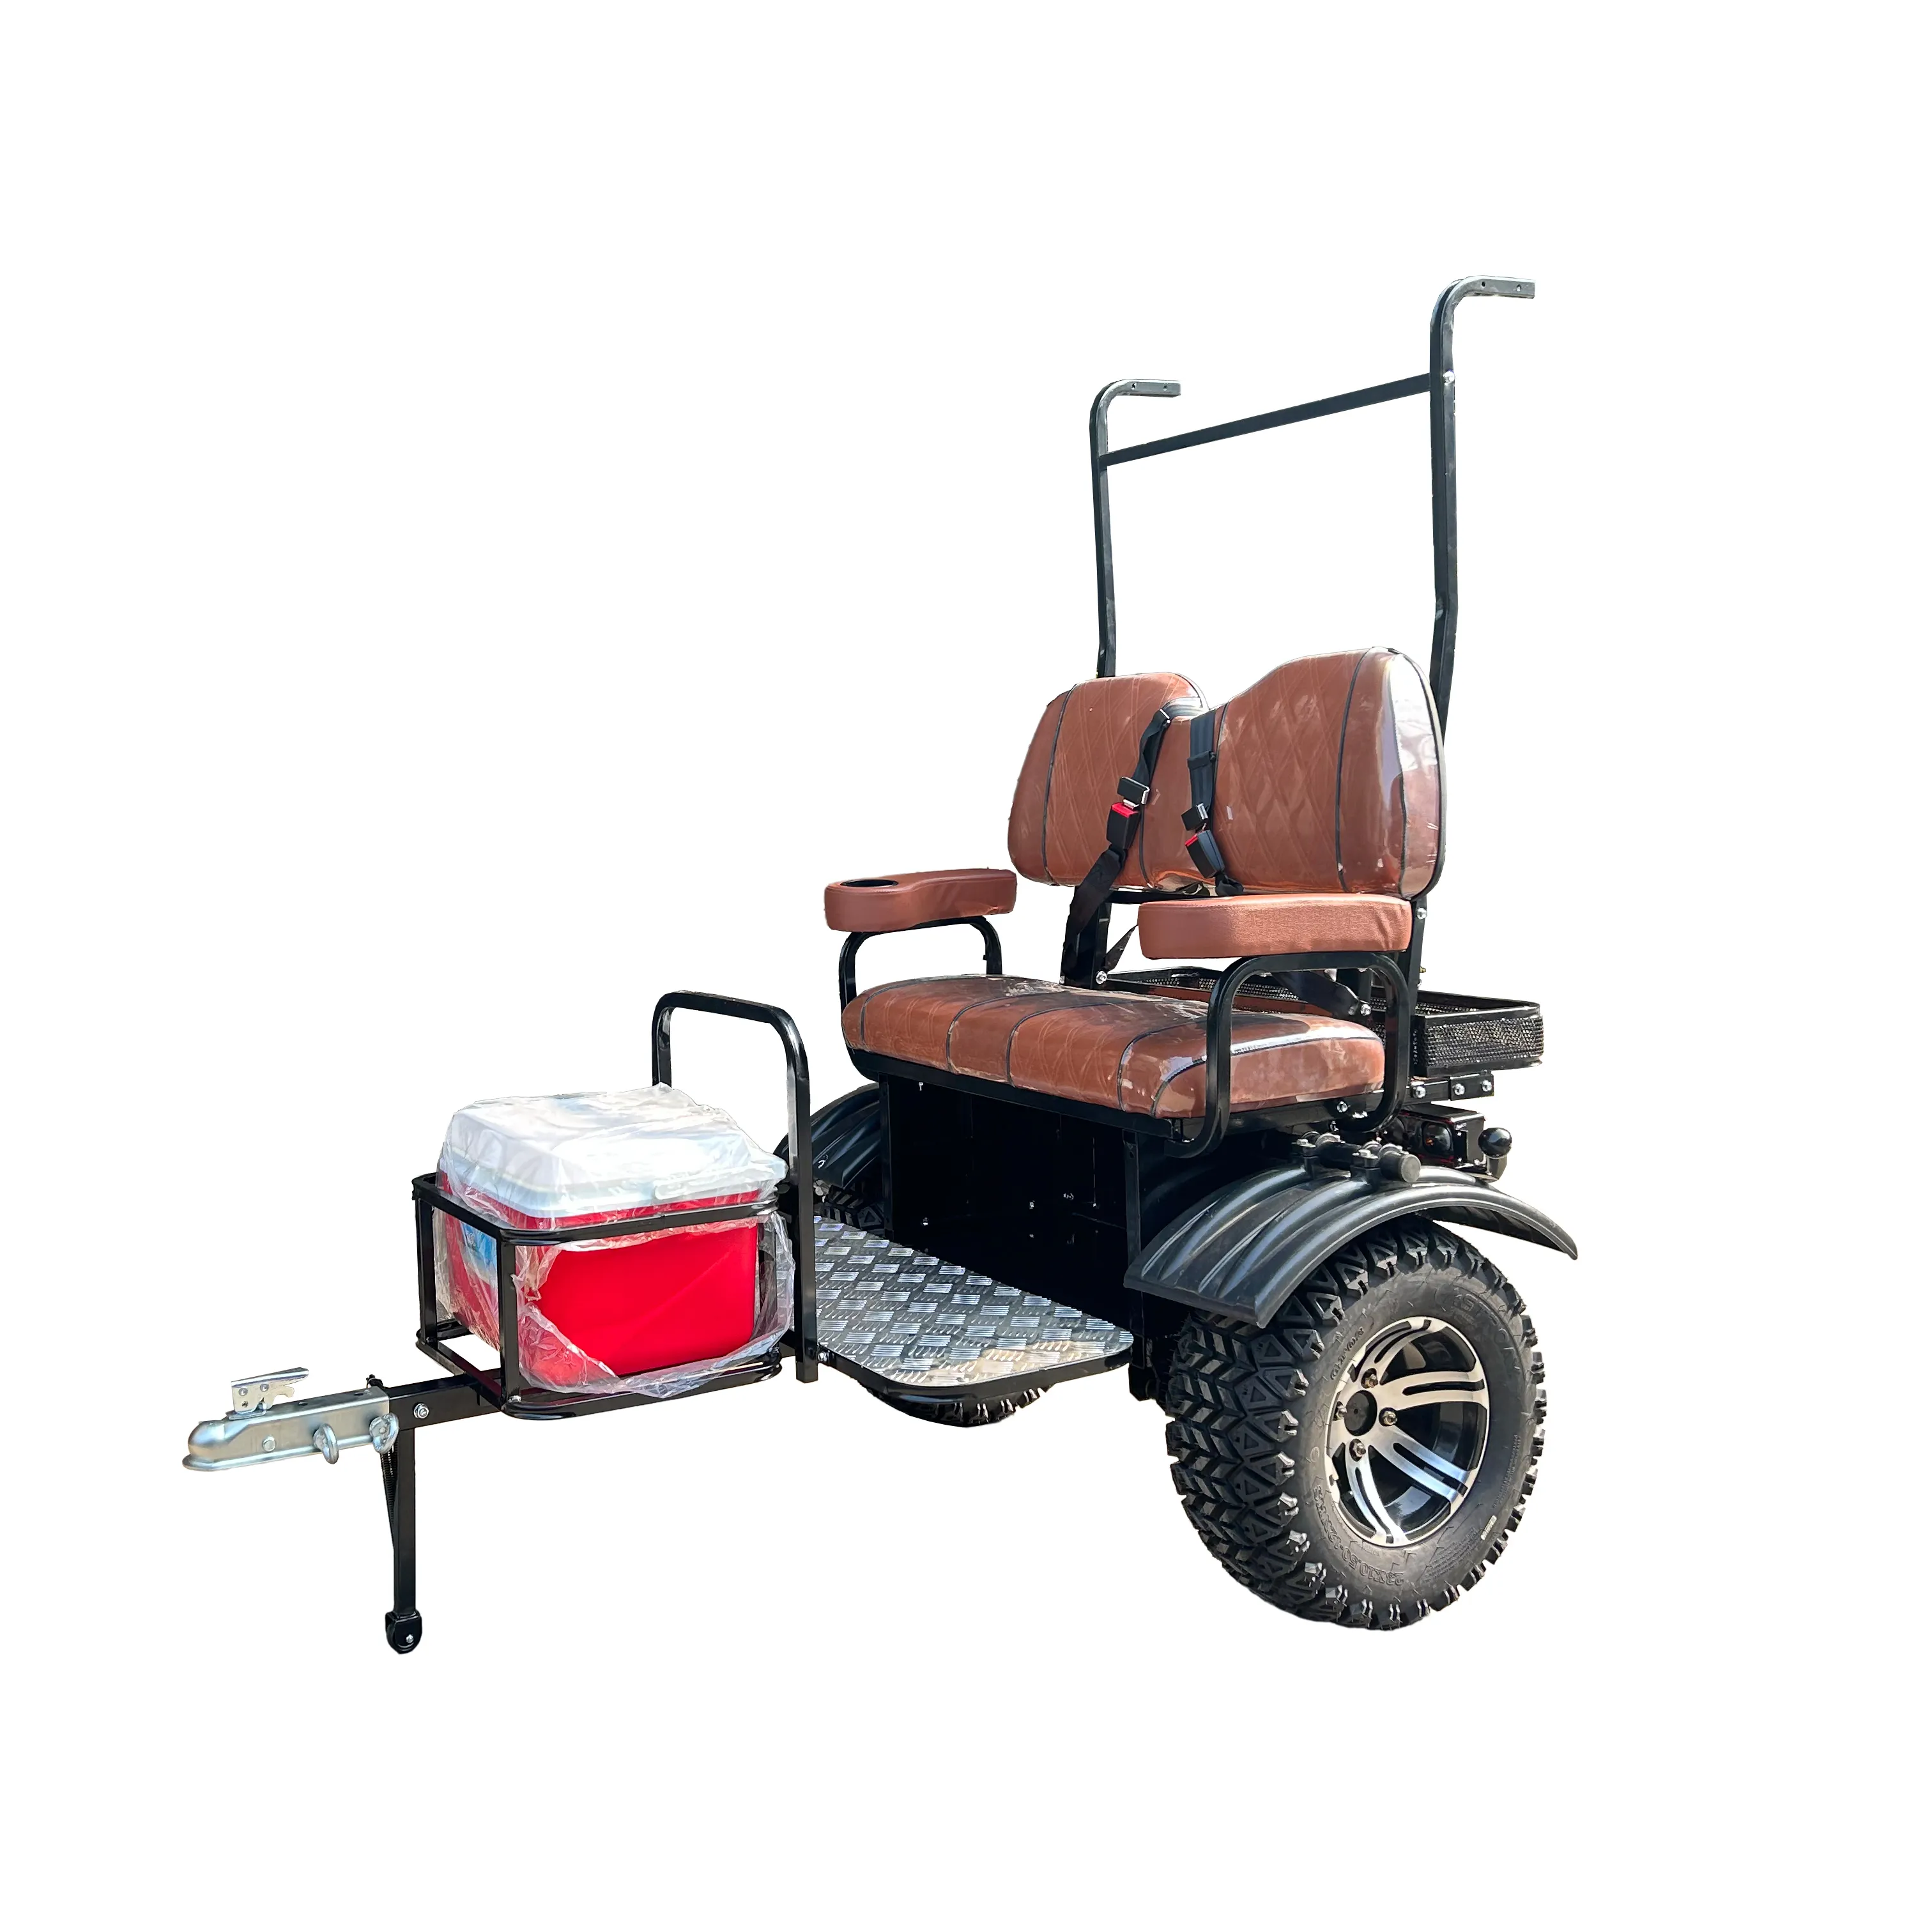 Lucente marchio automobilistico livello illuminazione combinazione design golf cart 2 posti carrelli da golf rimorchi